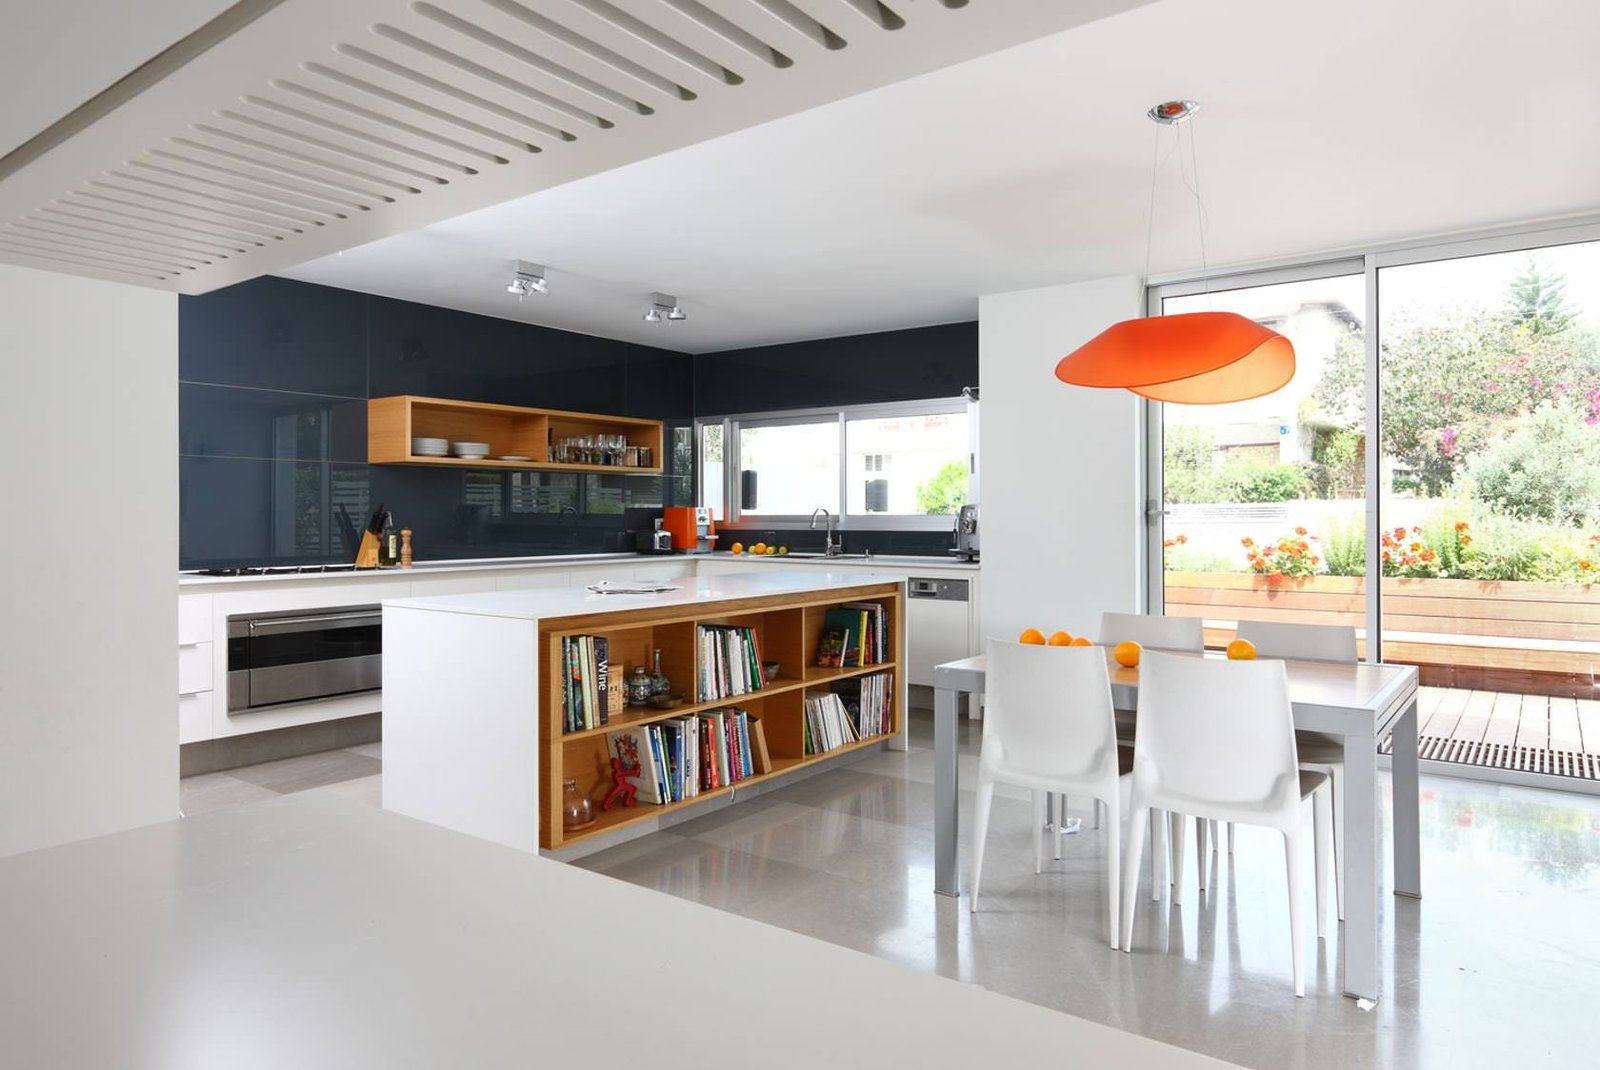 Open space molto luminoso in bianco e nero con alcuni tocchi di colore - rivestimento cucina in lastra di vetro, colore grigio scuro - rivestimenti per cucine moderne